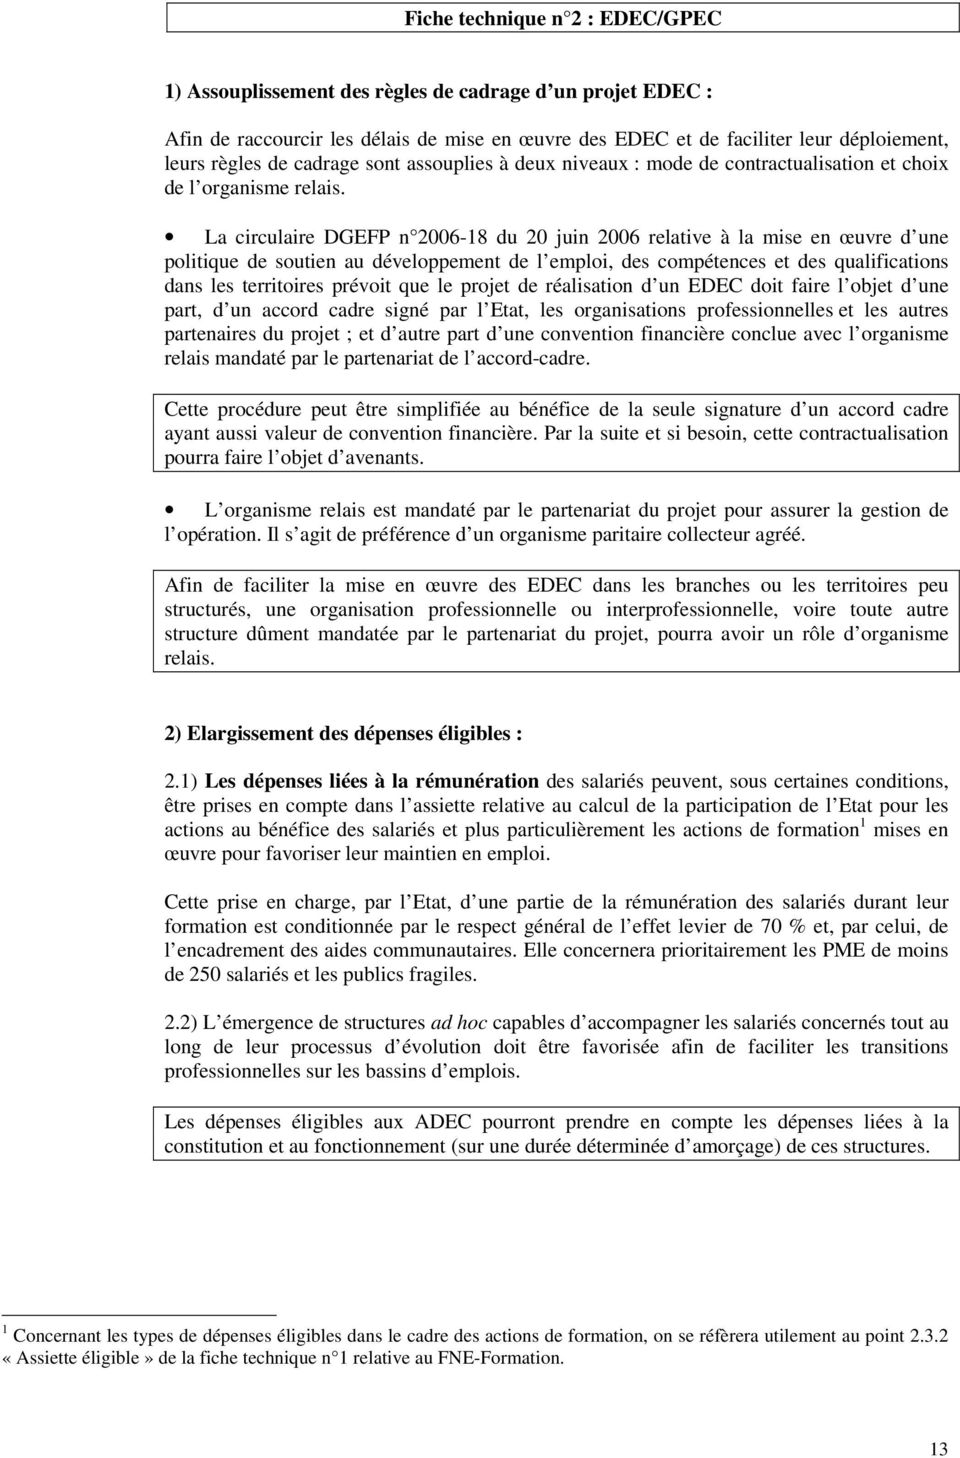 La circulaire DGEFP n 2006-18 du 20 juin 2006 relative à la mise en œuvre d une politique de soutien au développement de l emploi, des compétences et des qualifications dans les territoires prévoit